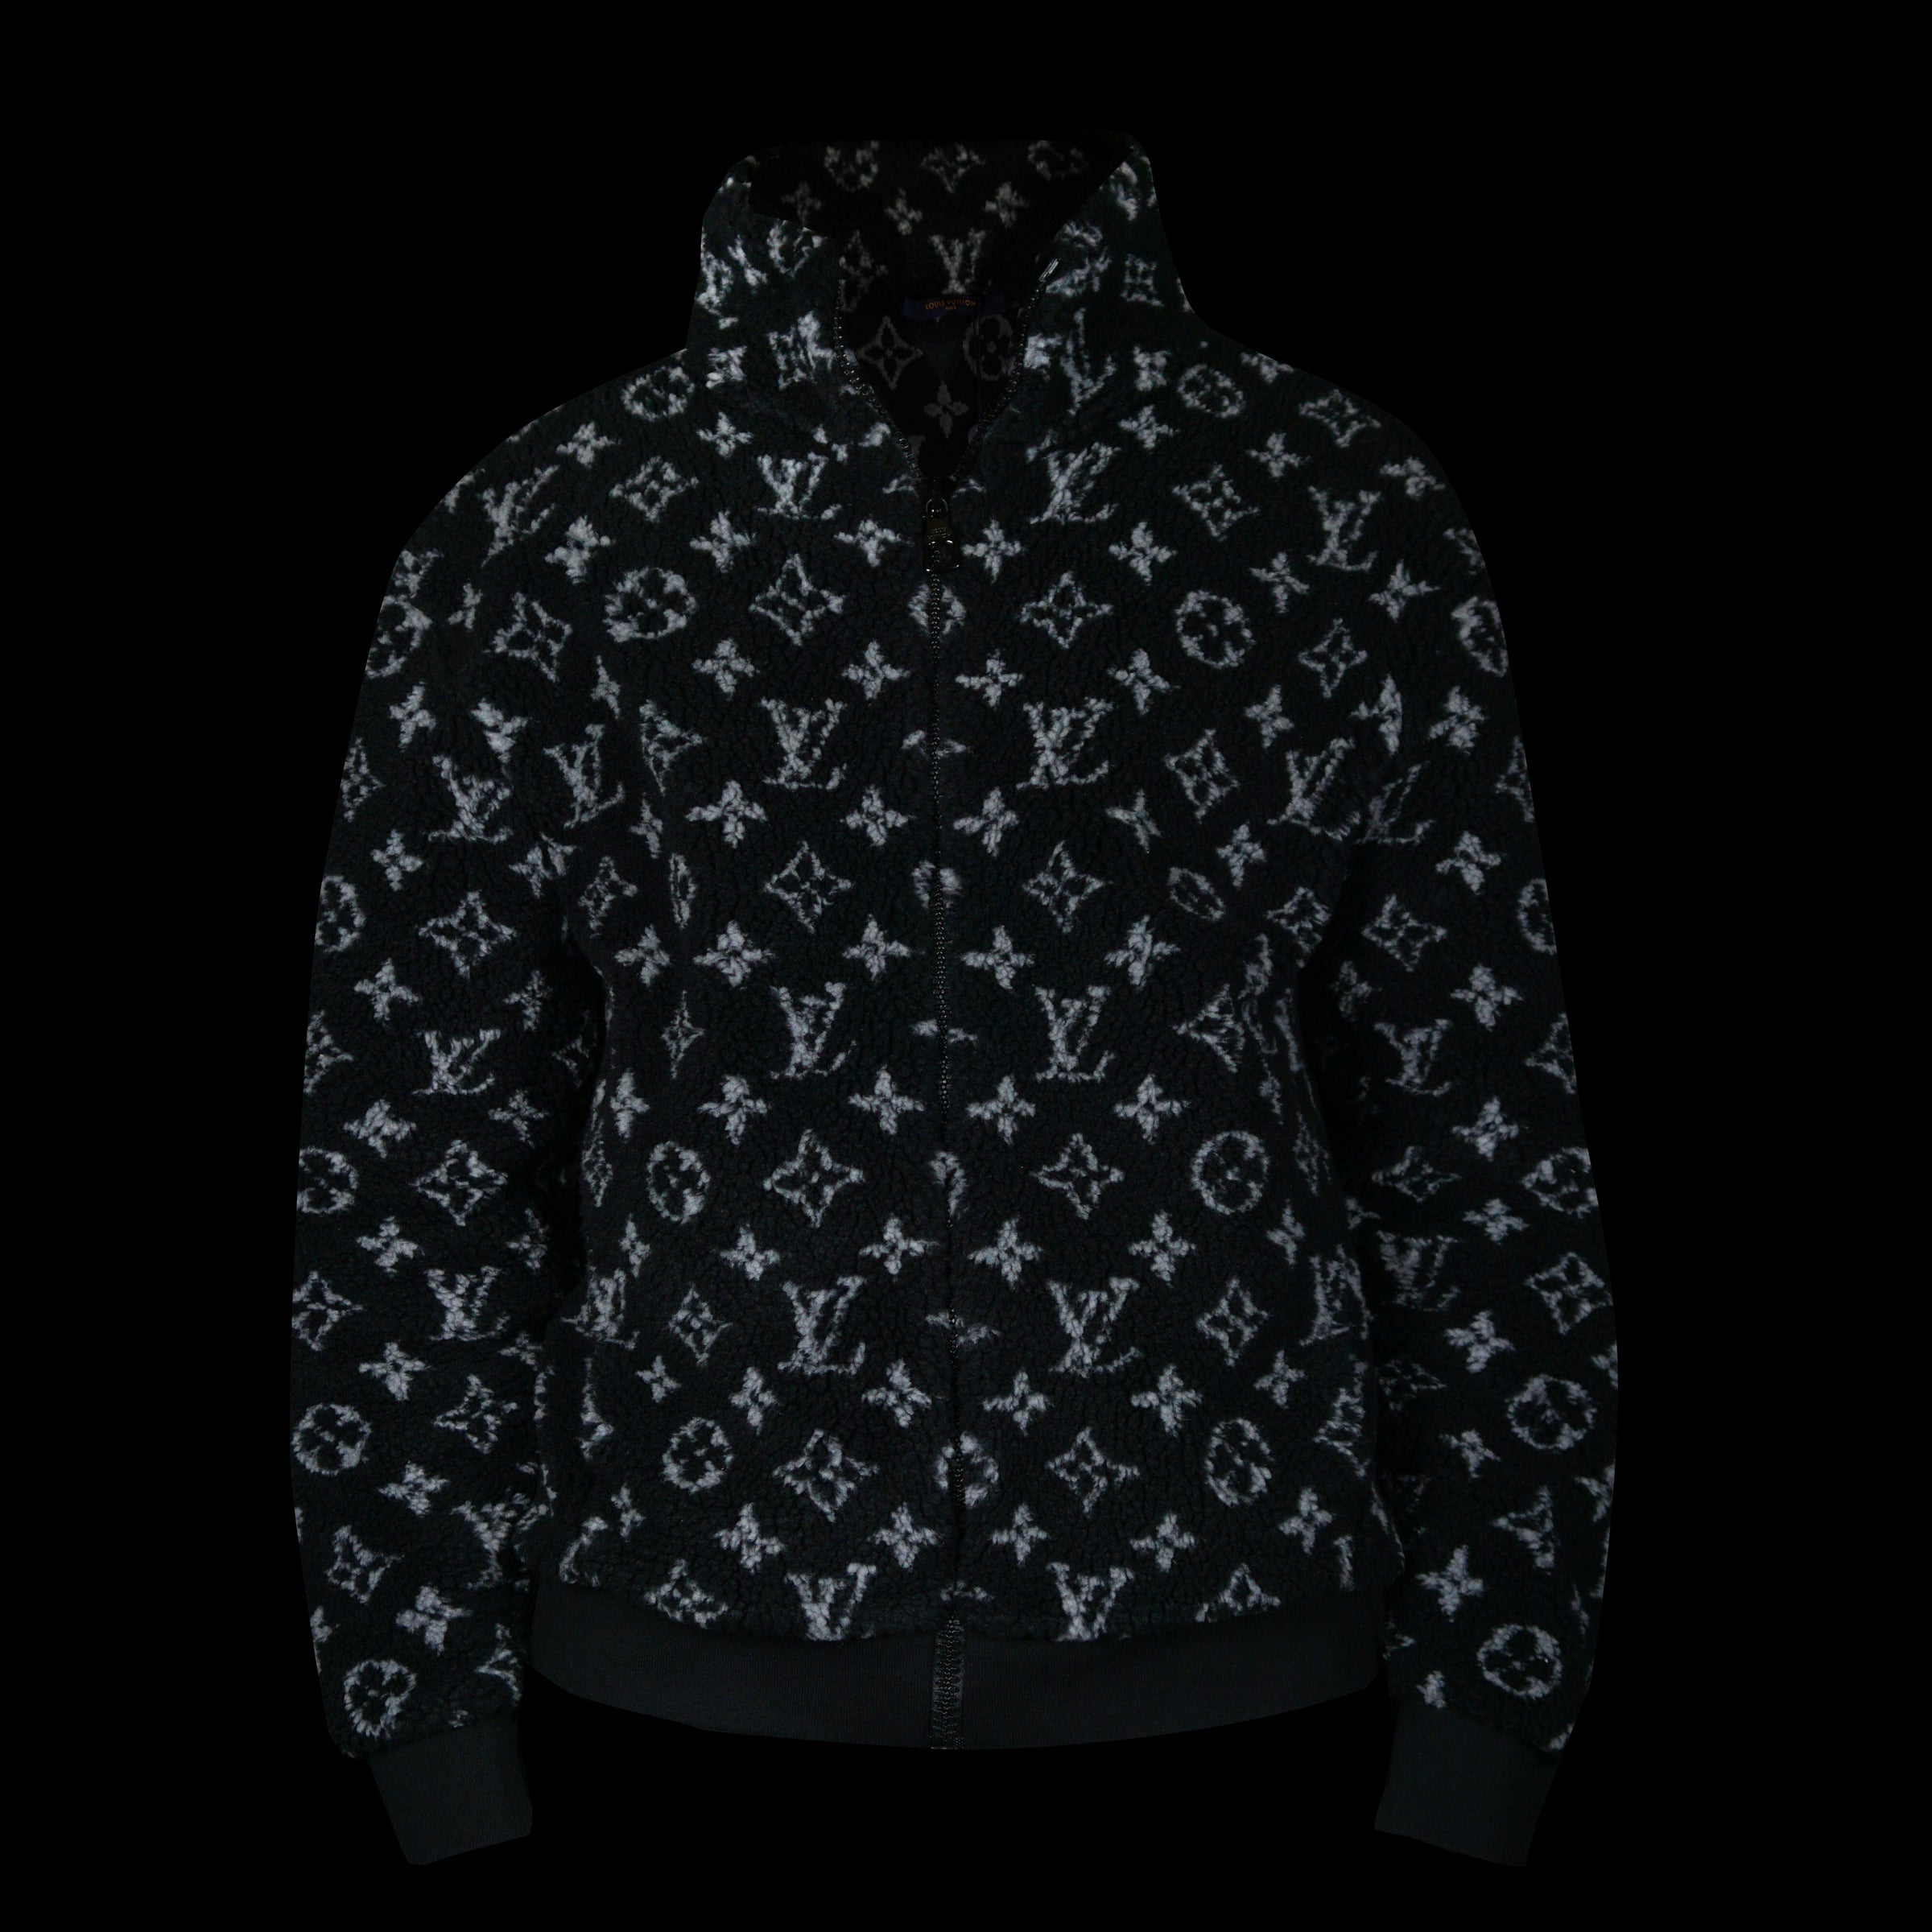 Louis Vuitton Black Monogram Fleece Zip Up Jacket